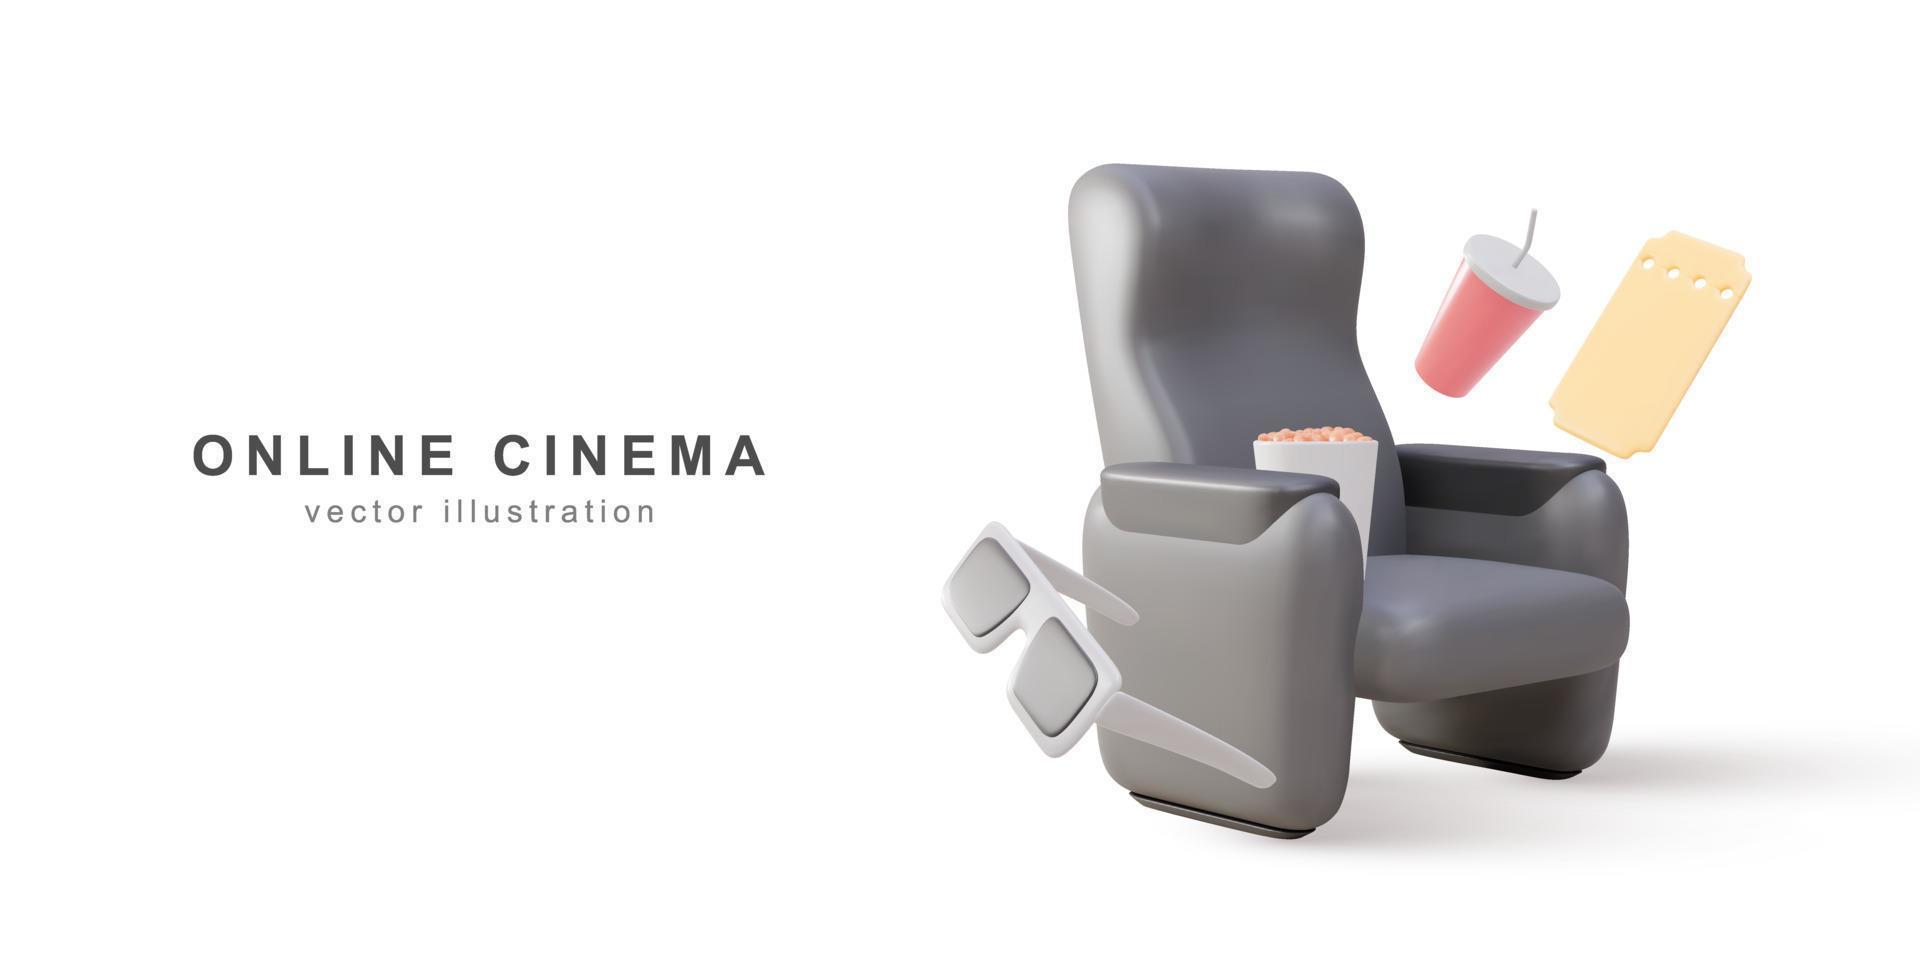 3d realistisch bioscoop stoel met comfortabel armleuningen, kaartjes, drankje, popcorn en bril. vector illustratie.